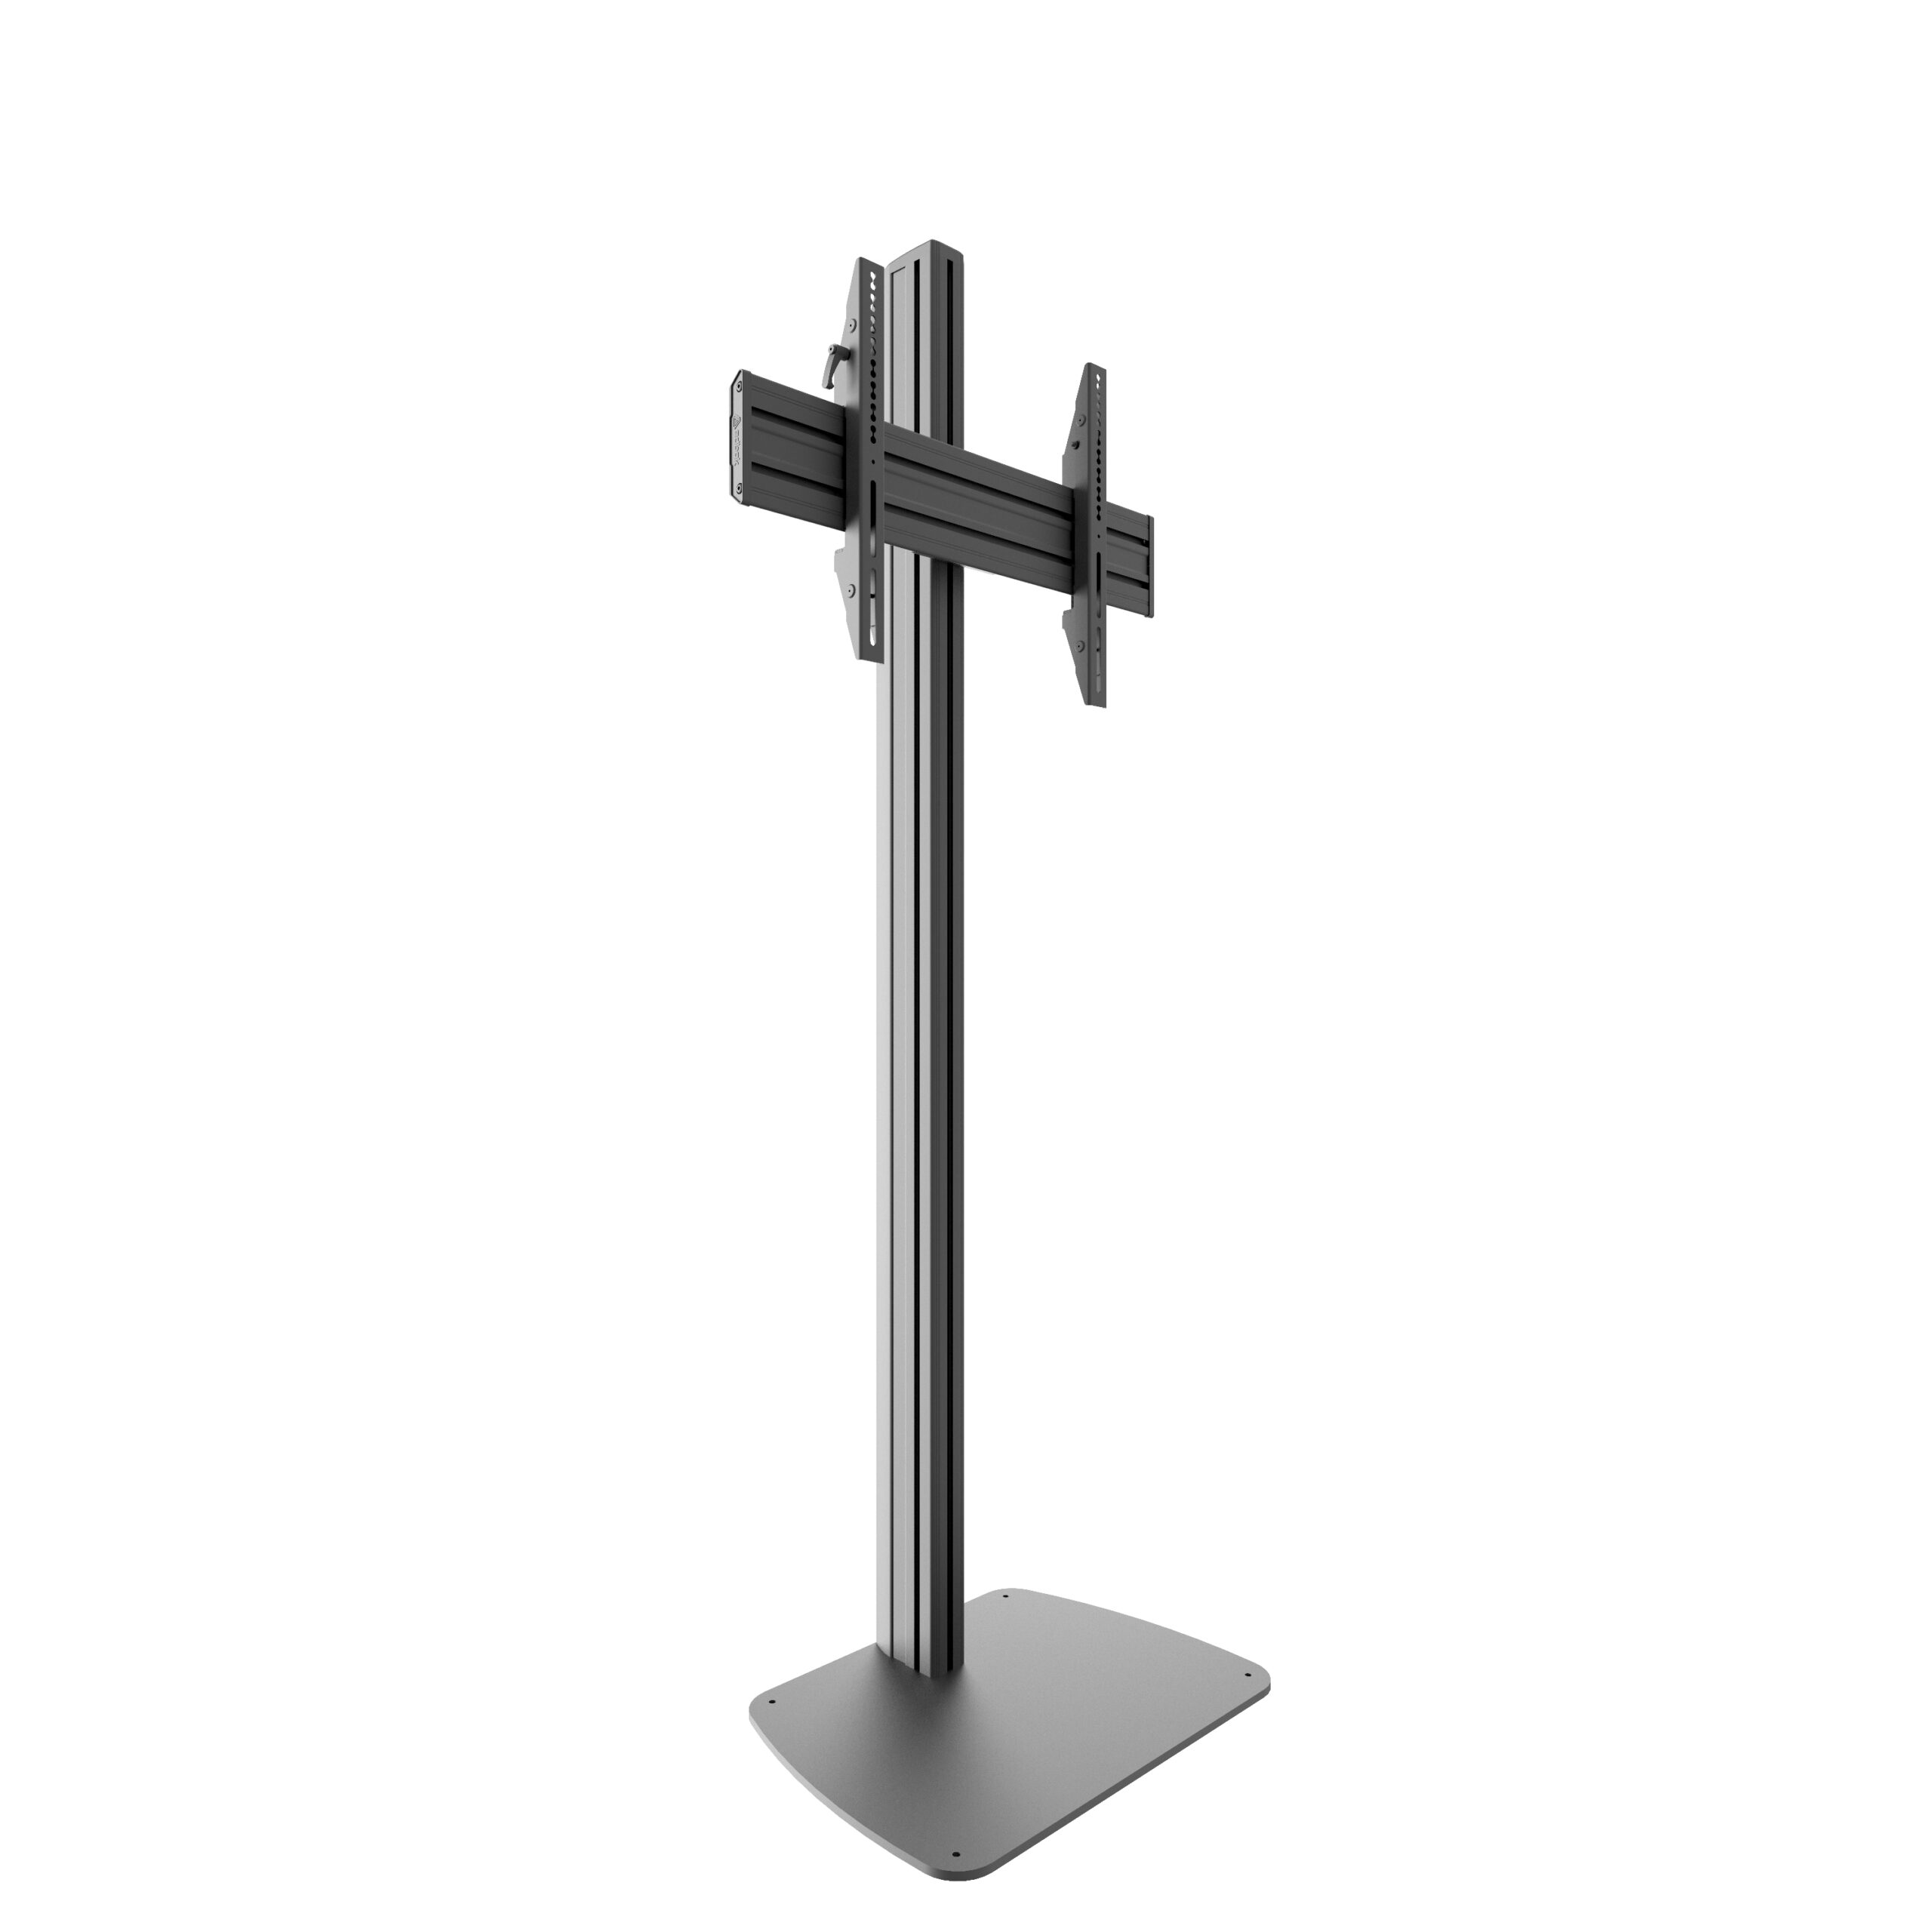 edbak EB-STDV100 - height-adjustable stand for displays 40 - 75 inch - VESA 600x400 mm - up to 80 kg - Landscape - Black